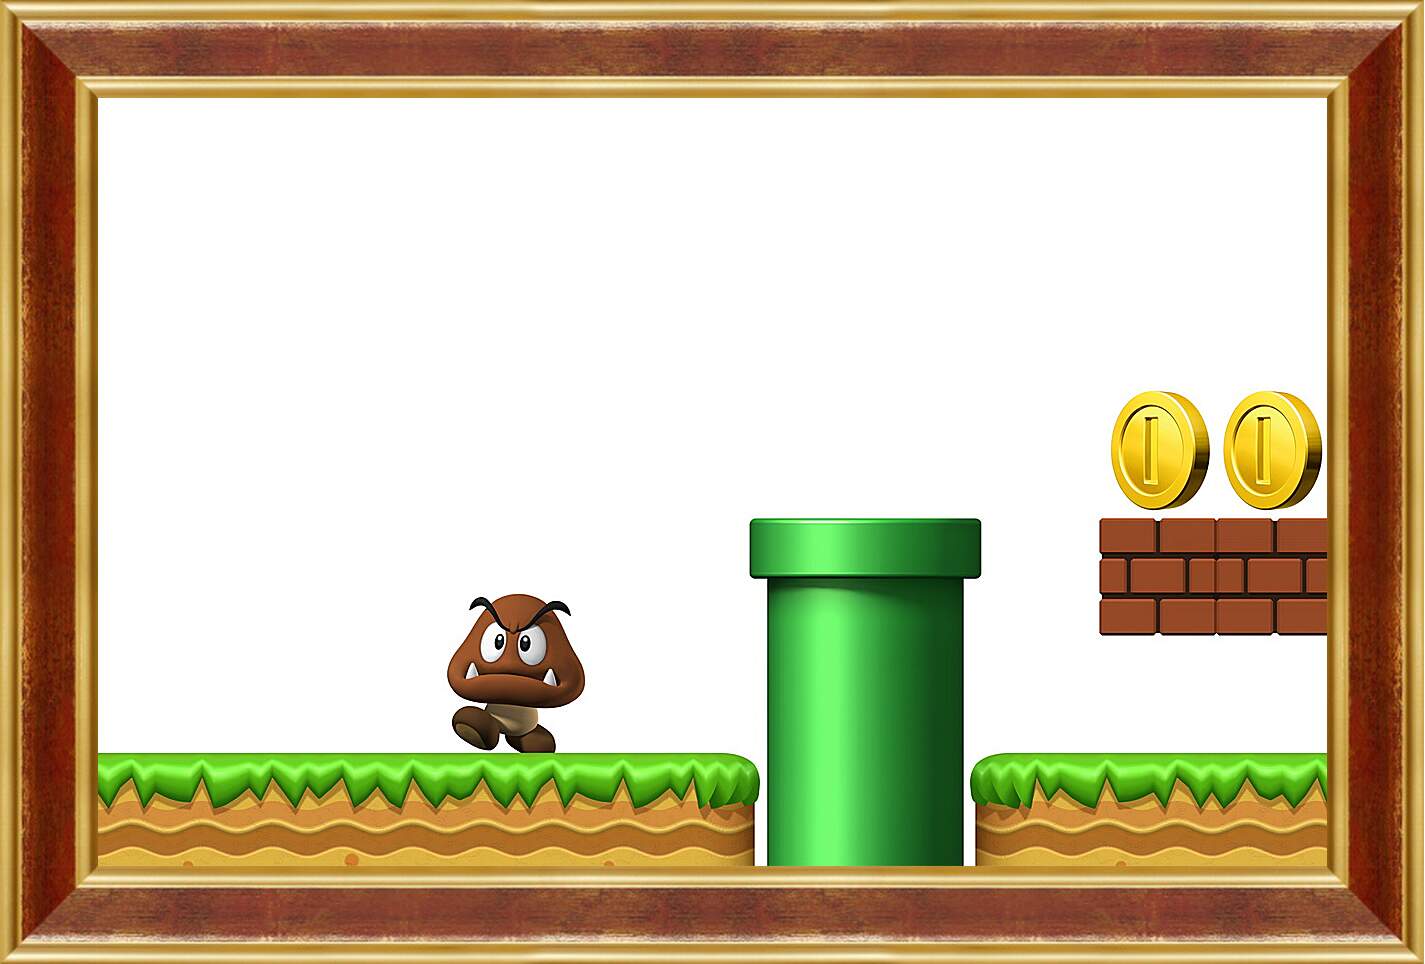 Картина в раме - New Super Mario Bros. Wii
